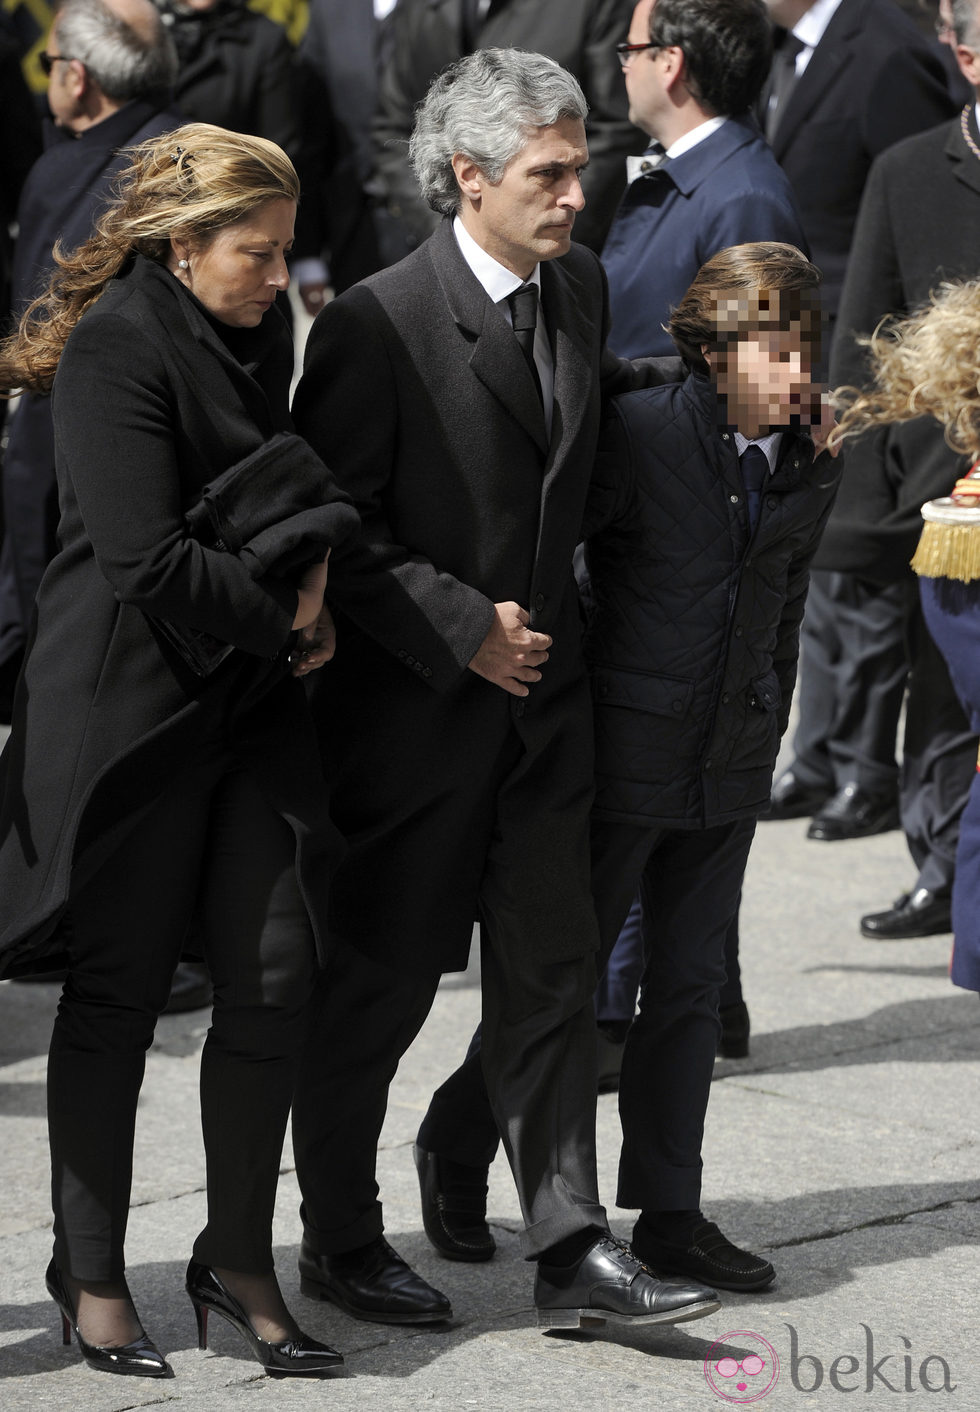 Adolfo Suárez Illana con su mujer Isabel y uno de sus hijos en el funeral de Adolfo Suárez